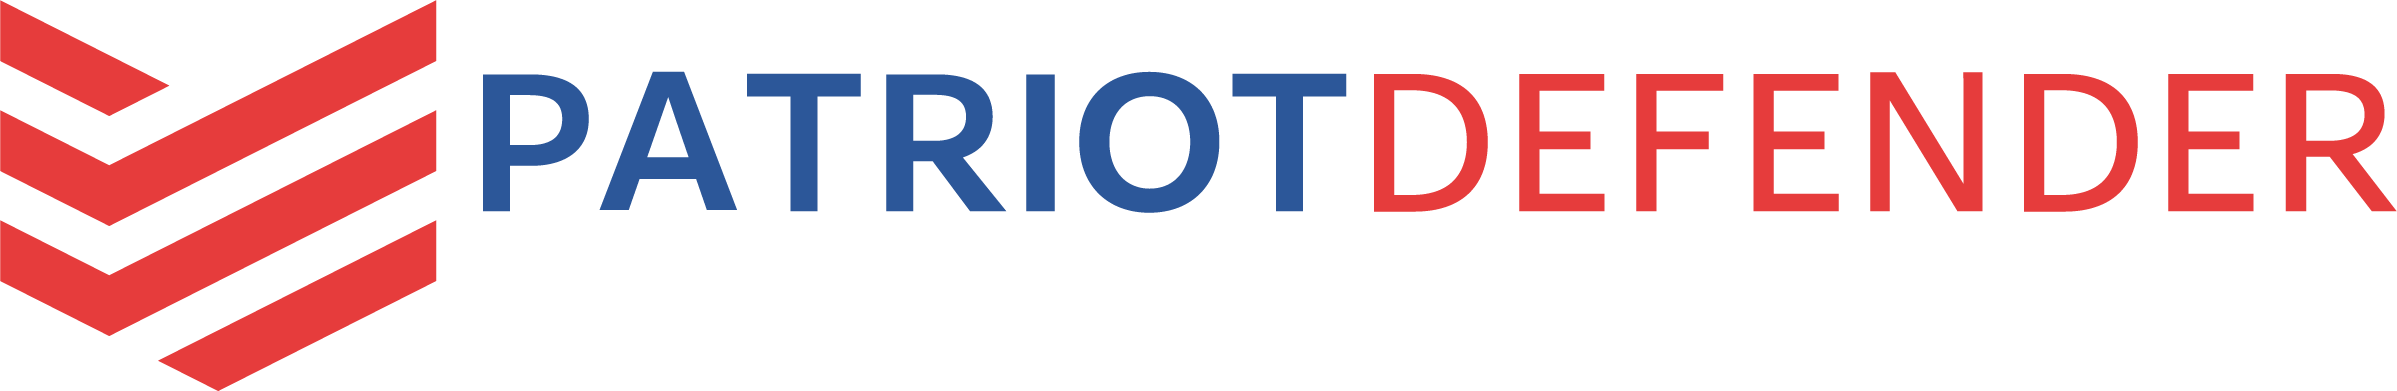 Patriot Defender Full Logo